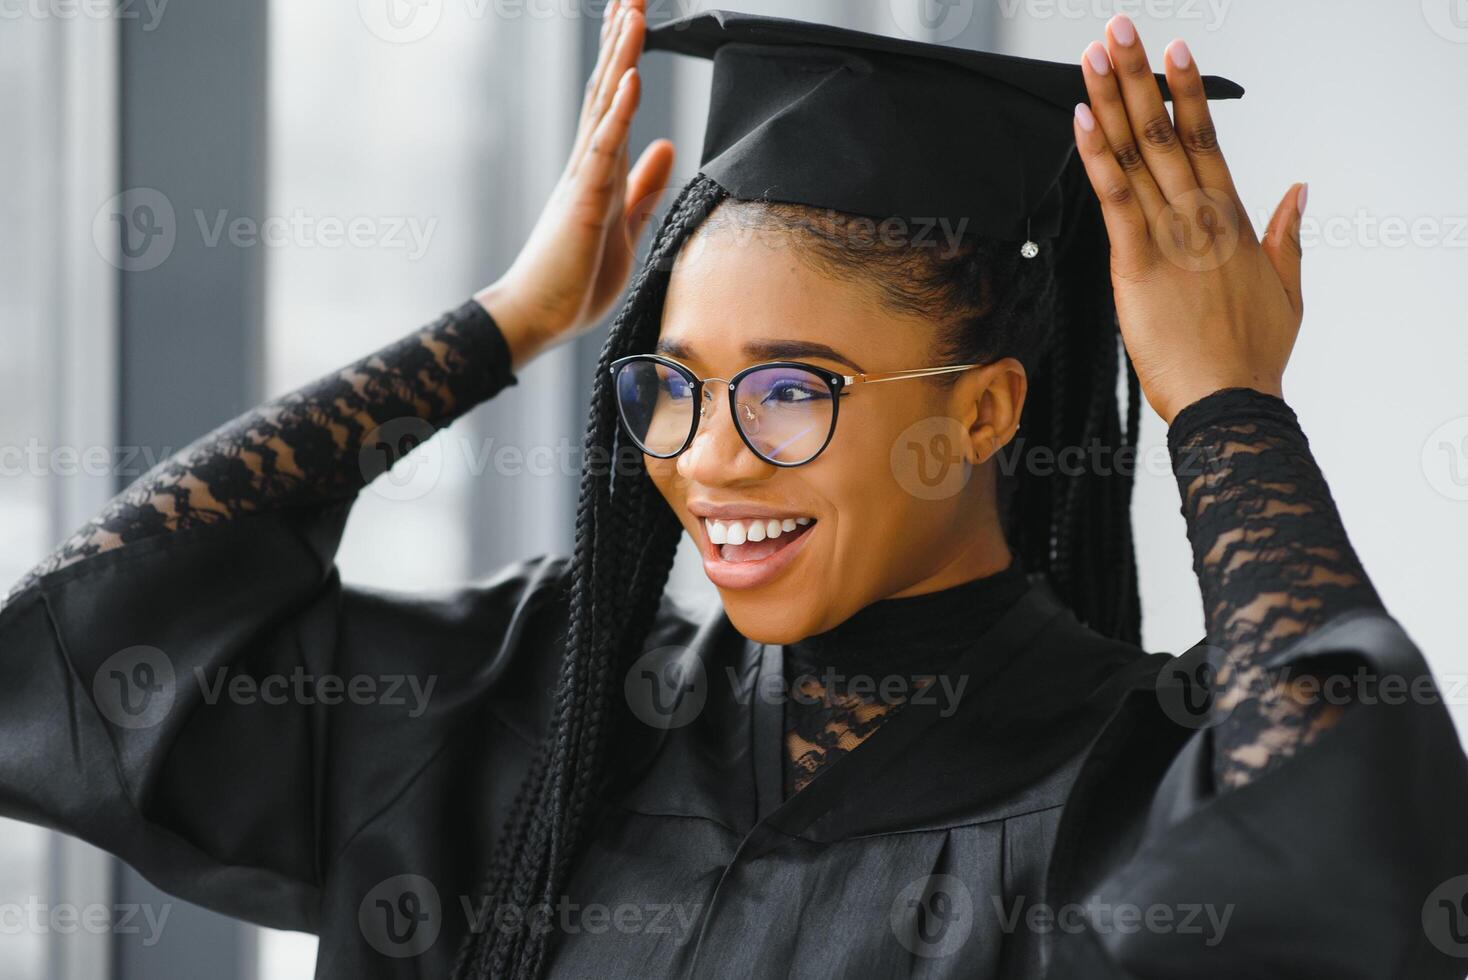 content africain américain femelle étudiant avec diplôme à l'obtention du diplôme photo